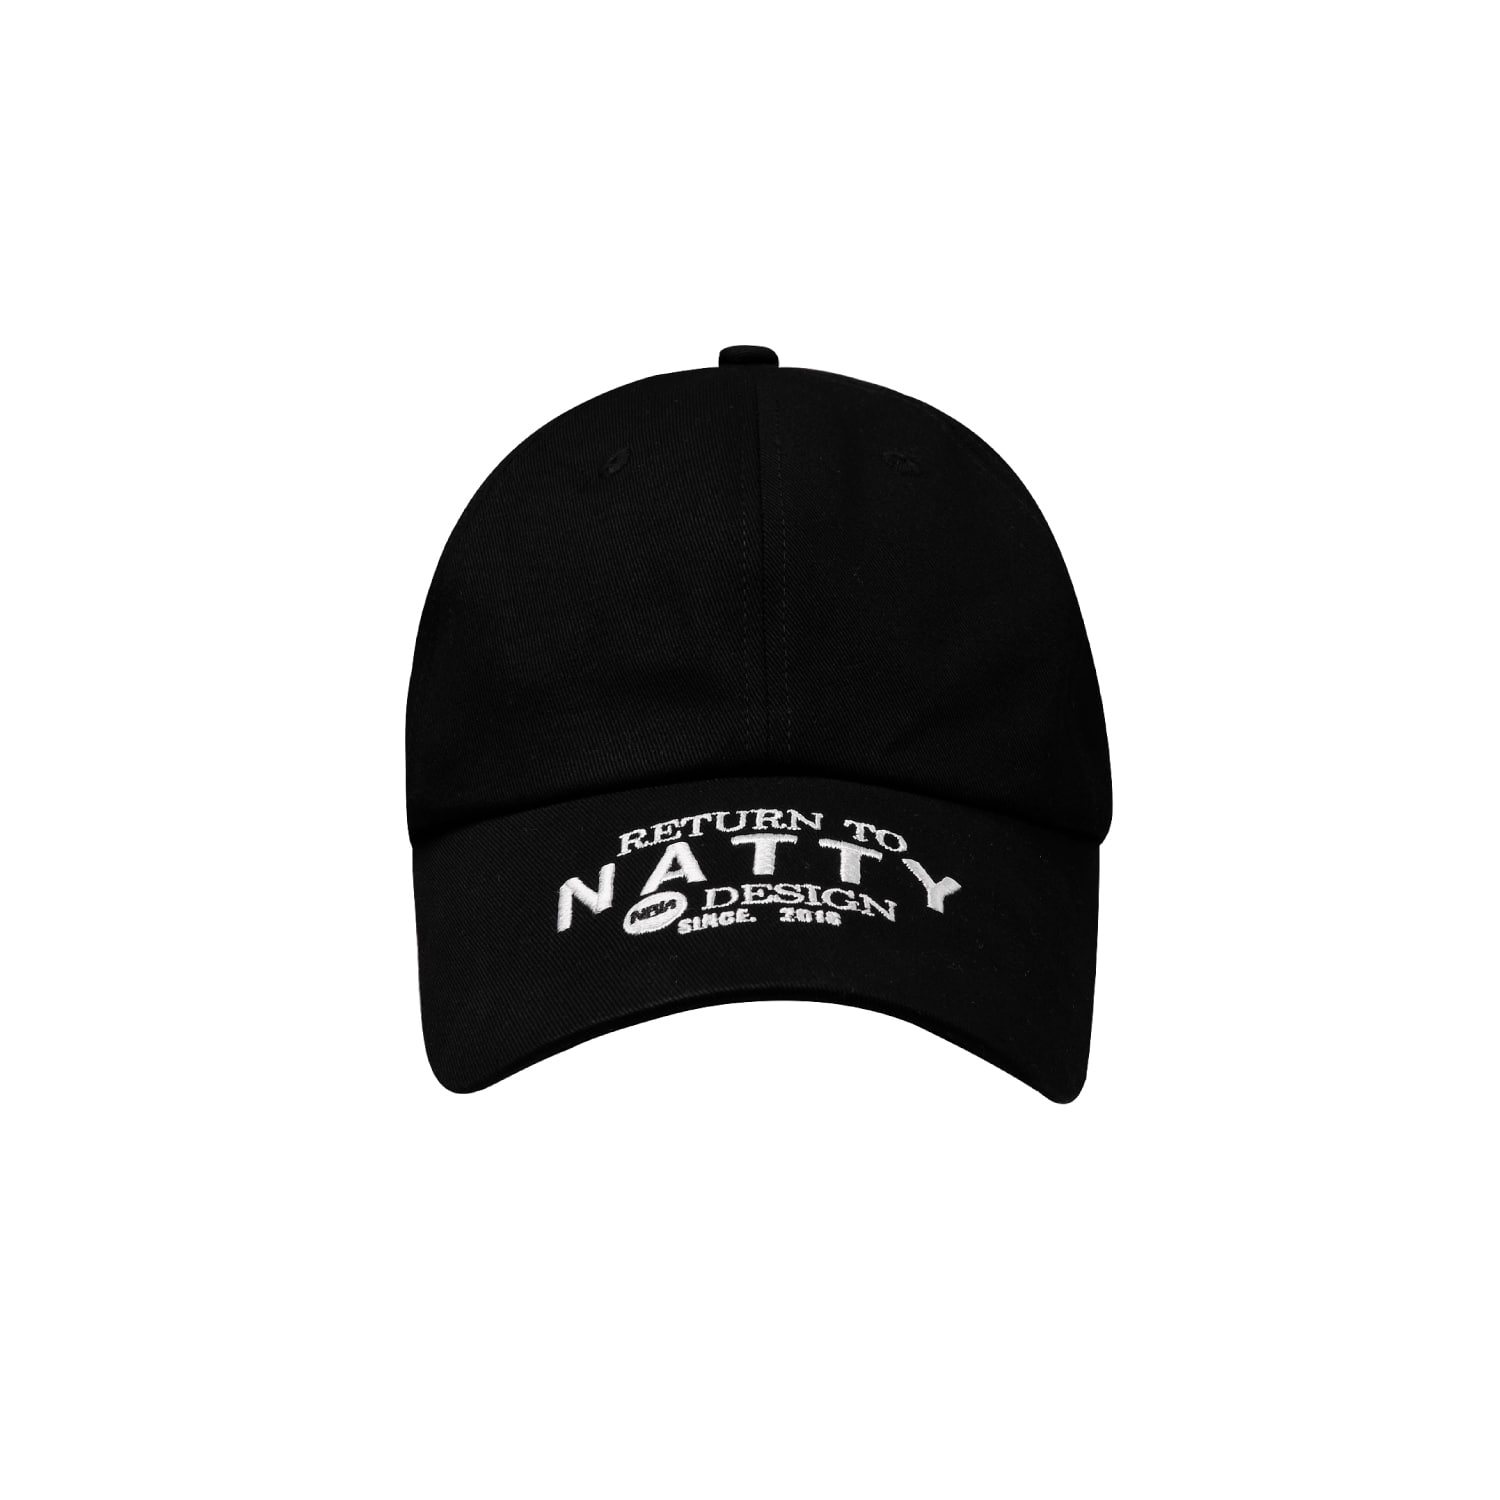 NATTY(네티) ᴏʀɪɢɪɴᴀʟ ᴘᴀᴛᴛᴇʀɴ 캡-모자